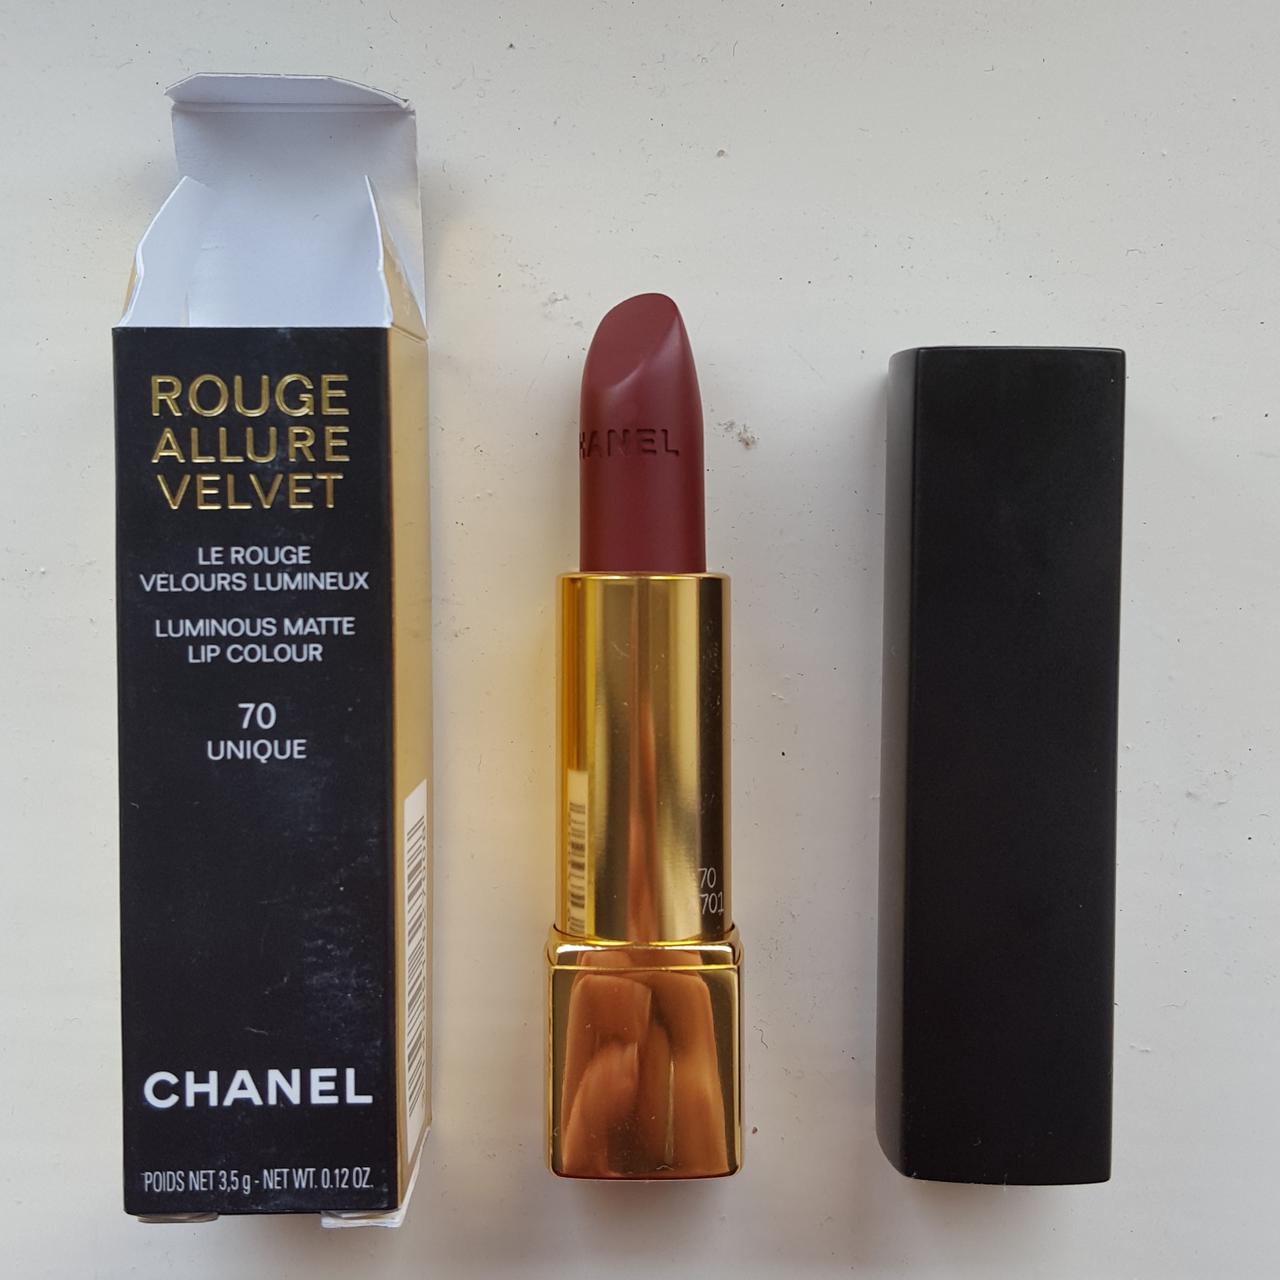 Genuine Chanel lipstick in Unique., Brand new in box